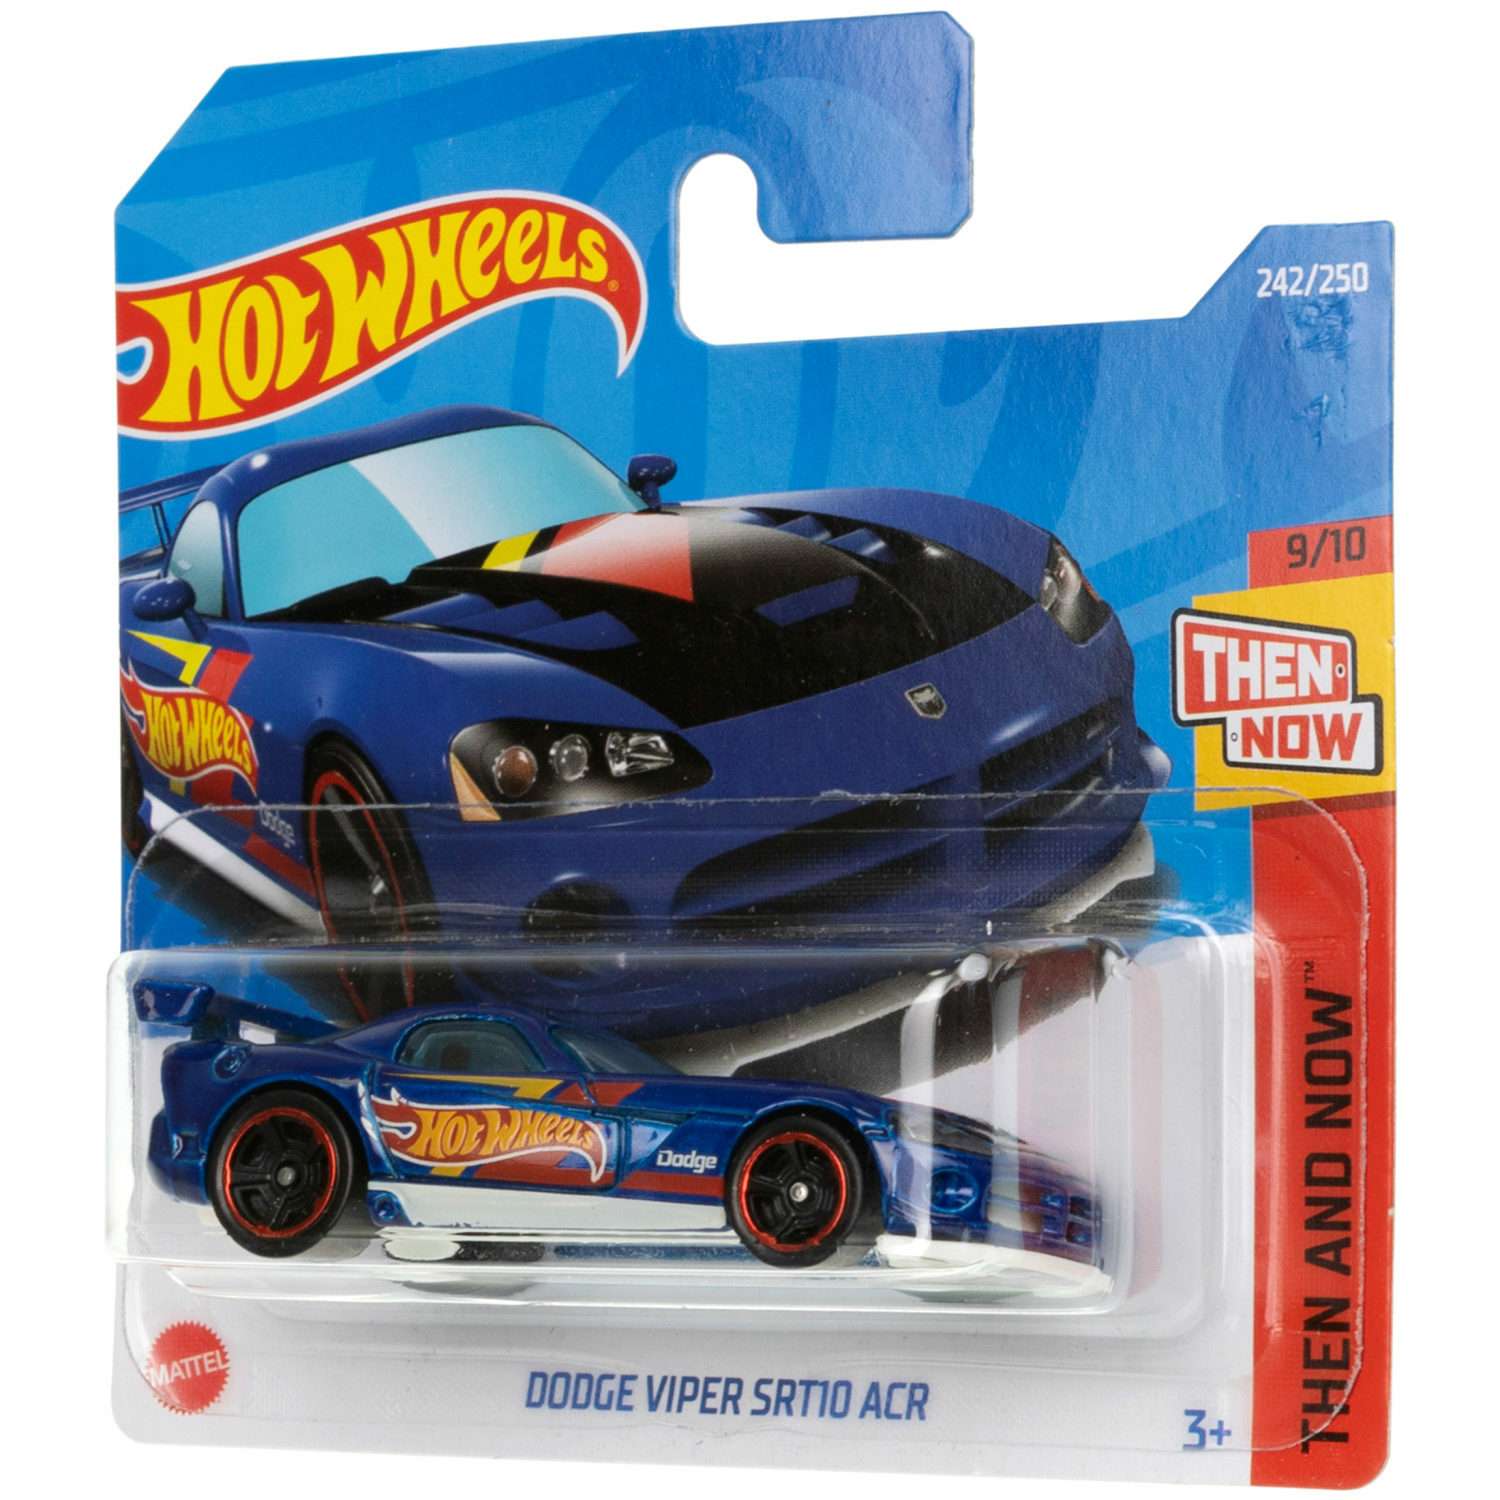 Коллекционная машинка Hot Wheels Dodge viper srt10 acr 5785-116 - фото 7